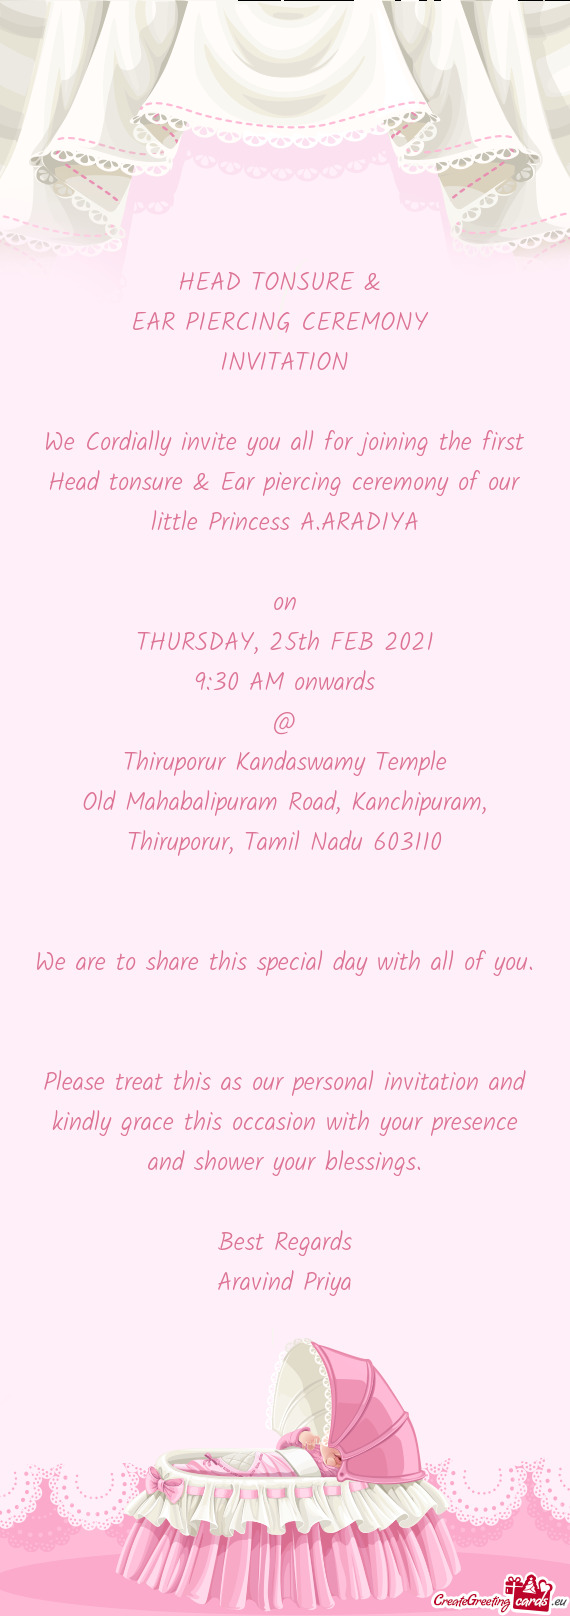 Old Mahabalipuram Road, Kanchipuram, Thiruporur, Tamil Nadu 603110